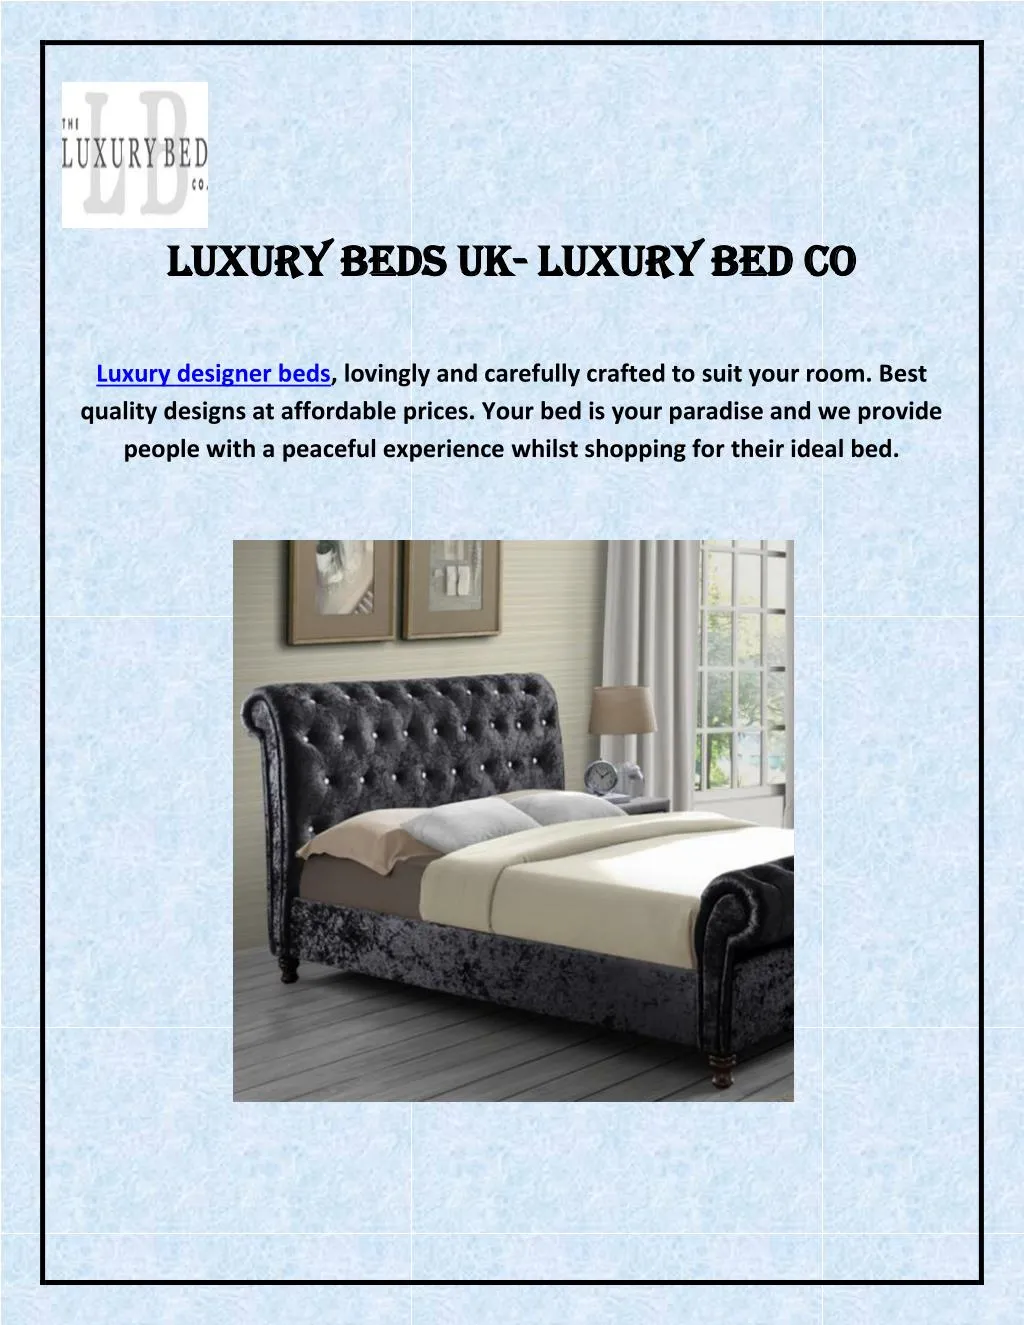 luxury beds uk luxury beds uk luxury bed co